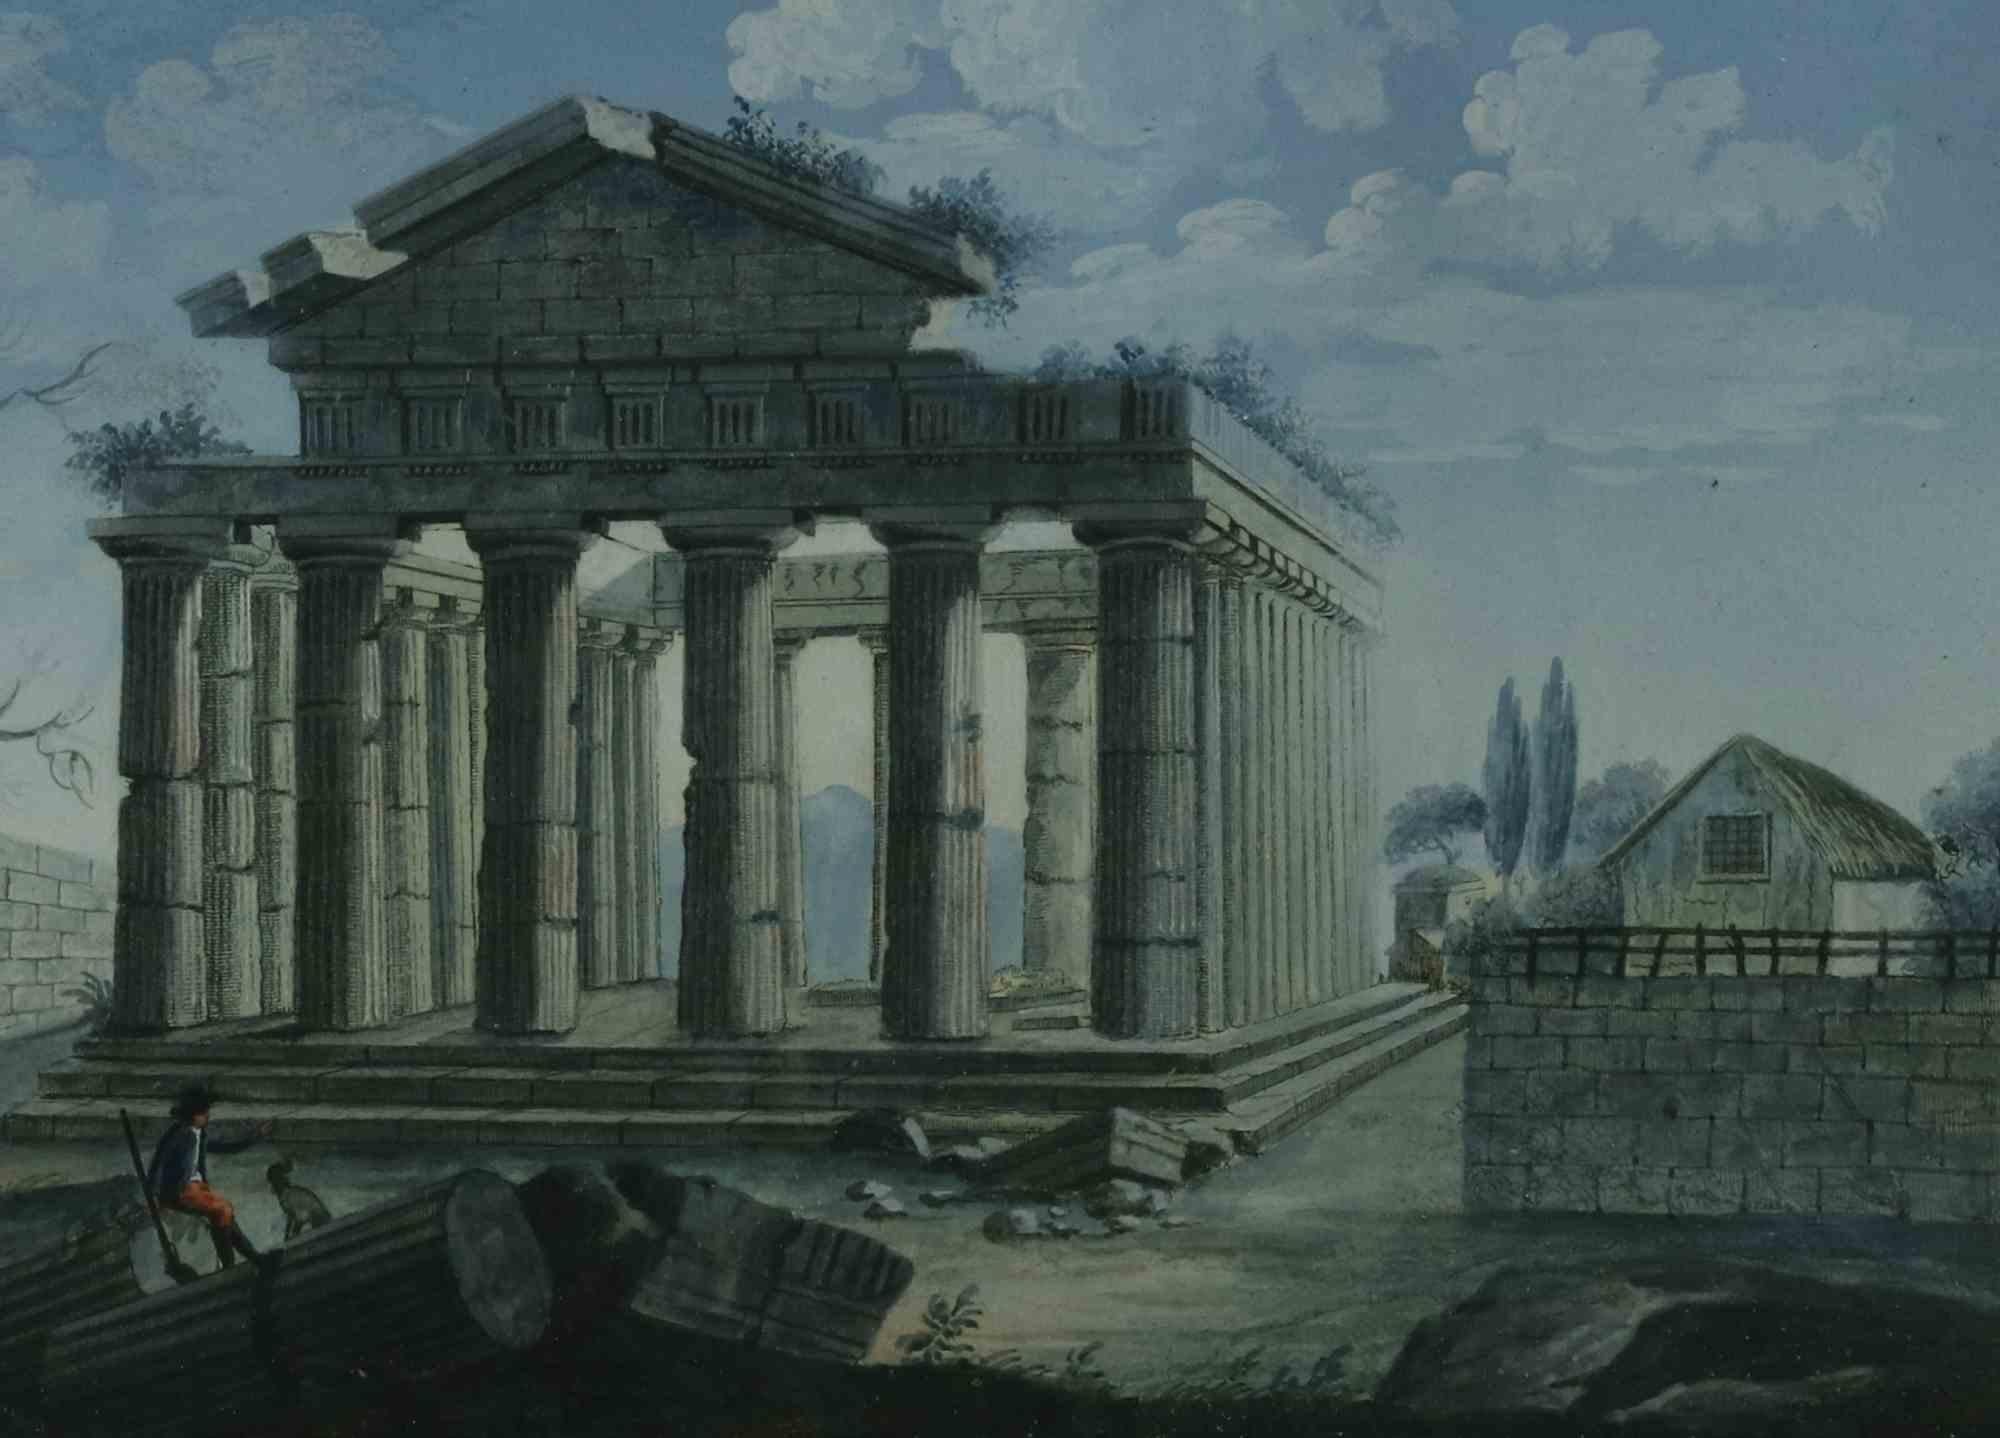 The Valley of the Temples – Gemischte, farbige Tempera auf Leinwand – Mitte des 19. Jahrhunderts – Painting von Unknown